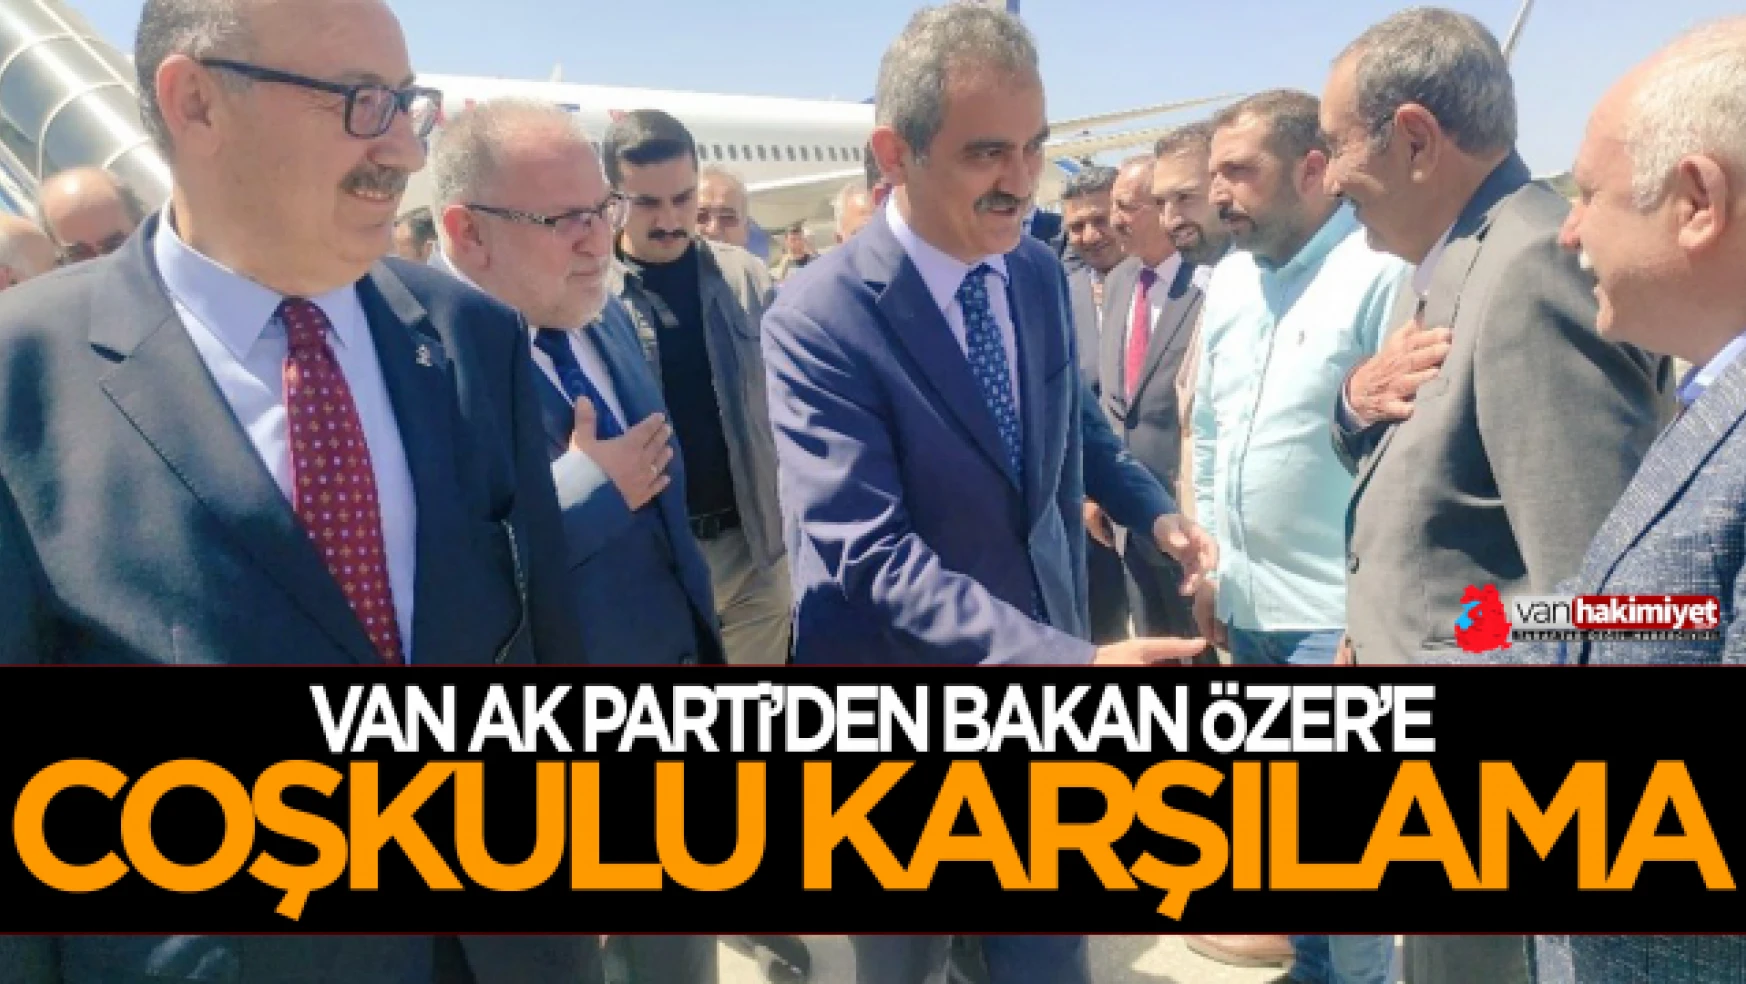 AK Parti Van İl Başkanlığı'ndan Bakan Özer'e sıcak karşılama